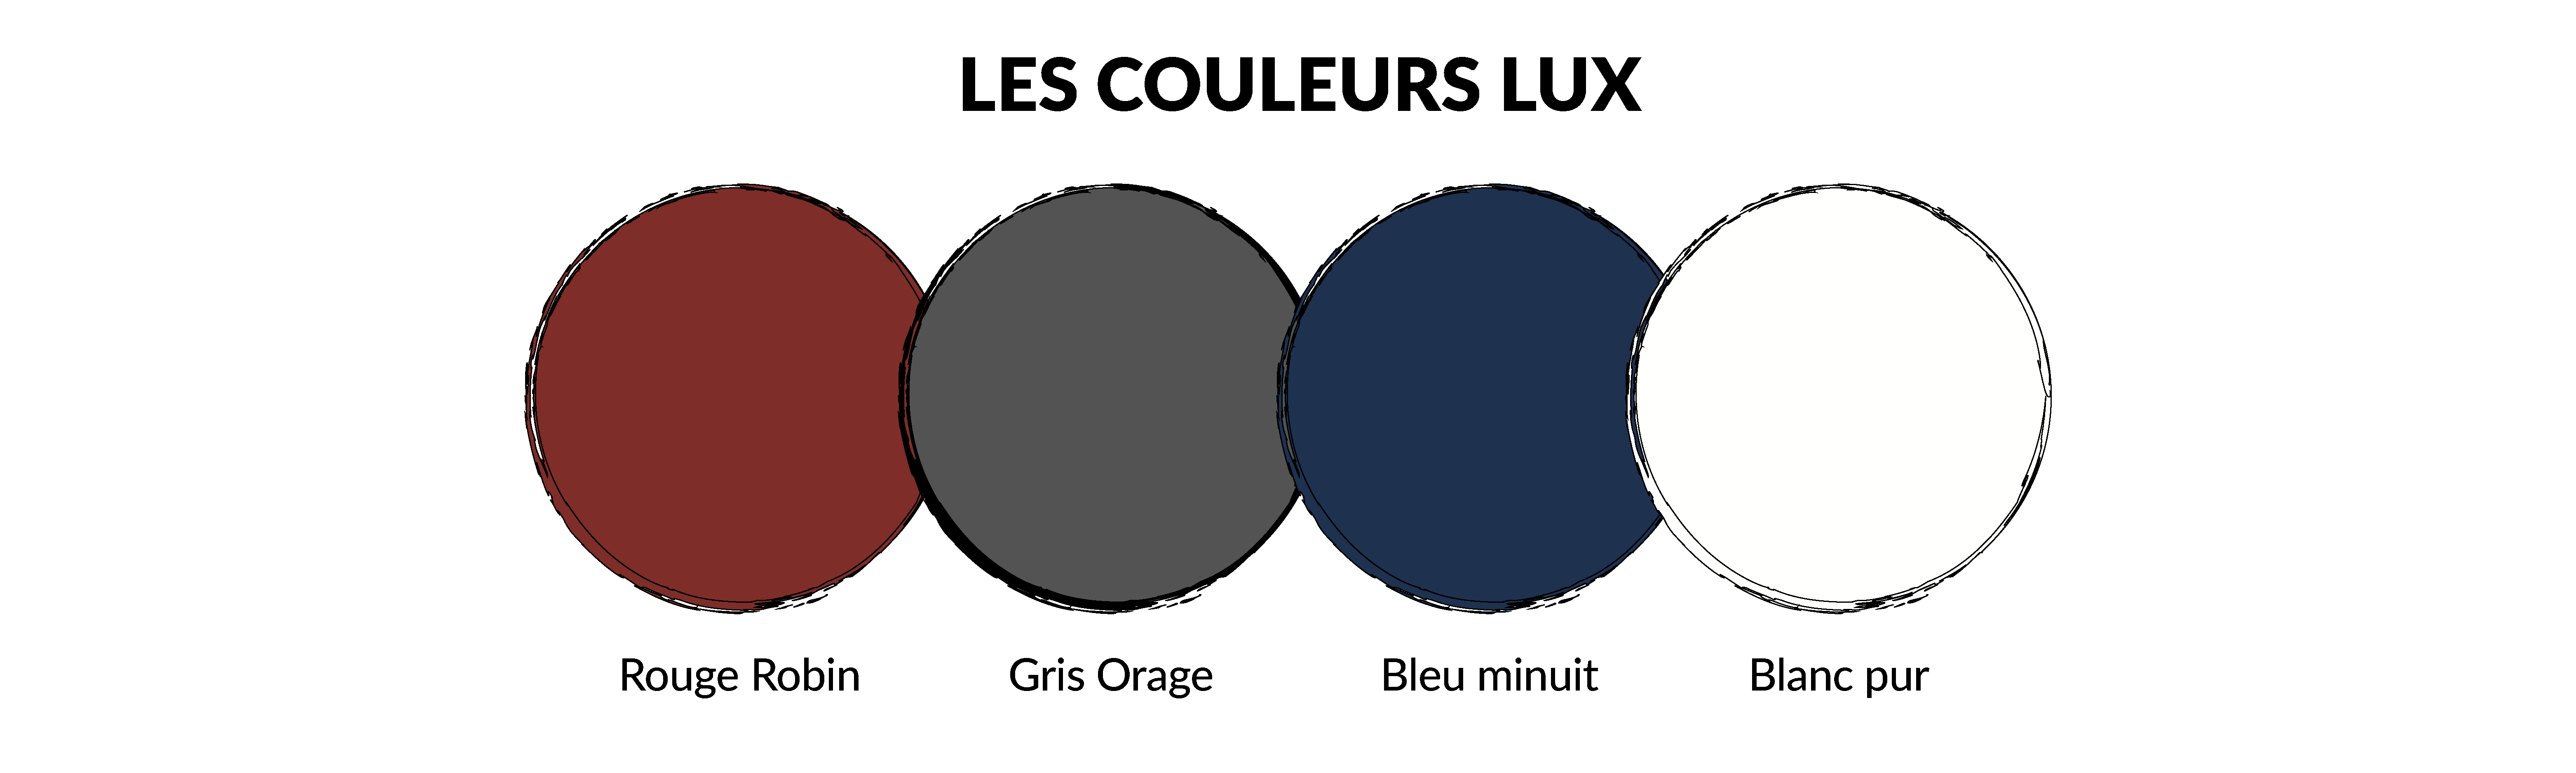 LUX colors